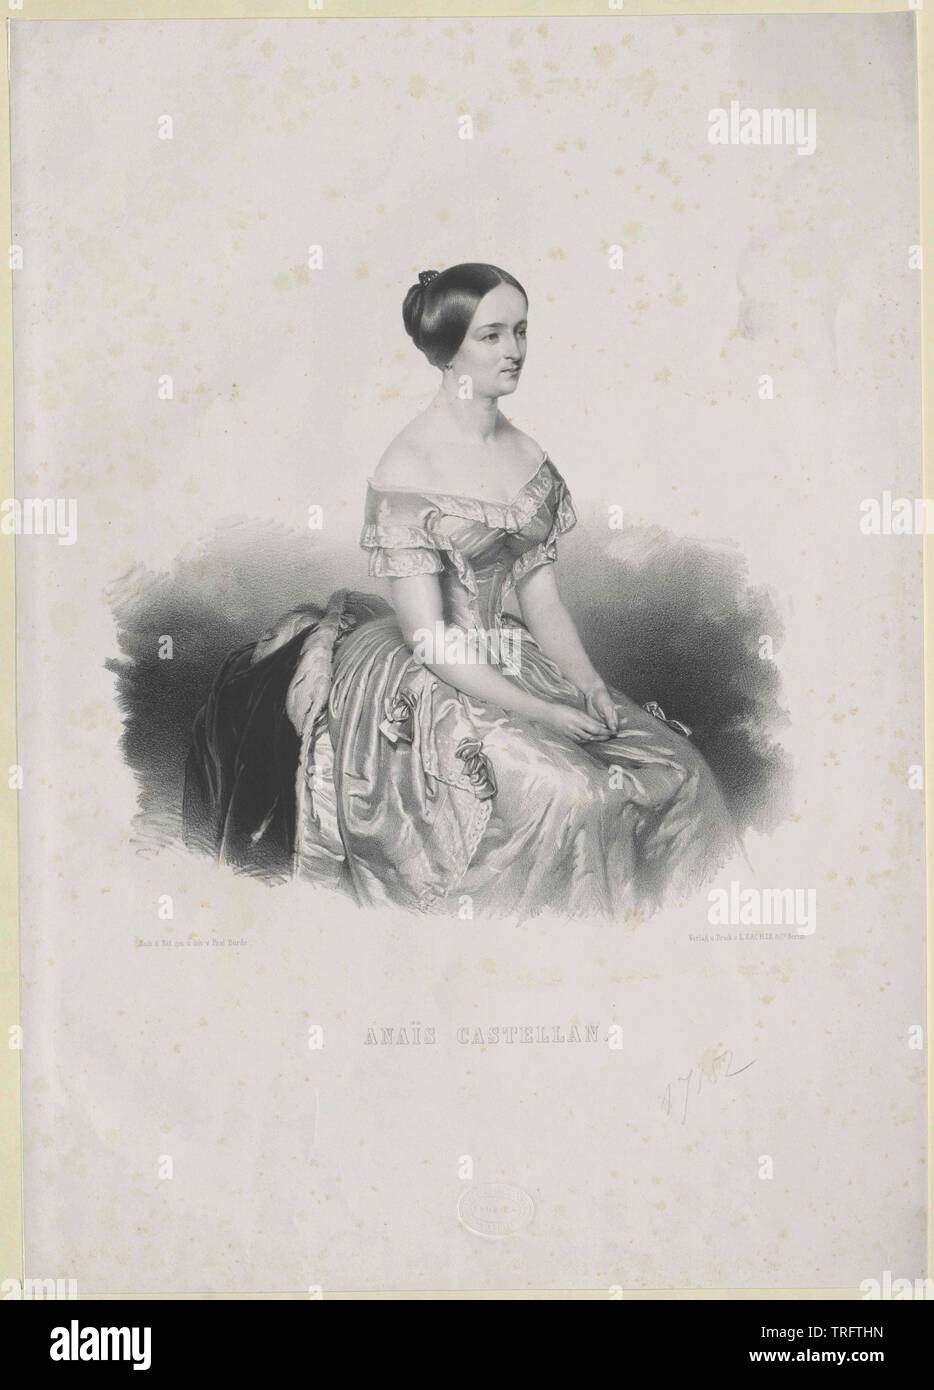 Castella, Jeanne Anais, französische Sängerin (Höhen), singen abwechselnd in Italien und in Wien, 1848-1852 am Covent Garden, gelingt in Mexiko und den USA, Additional-Rights - Clearance-Info - Not-Available Stockfoto